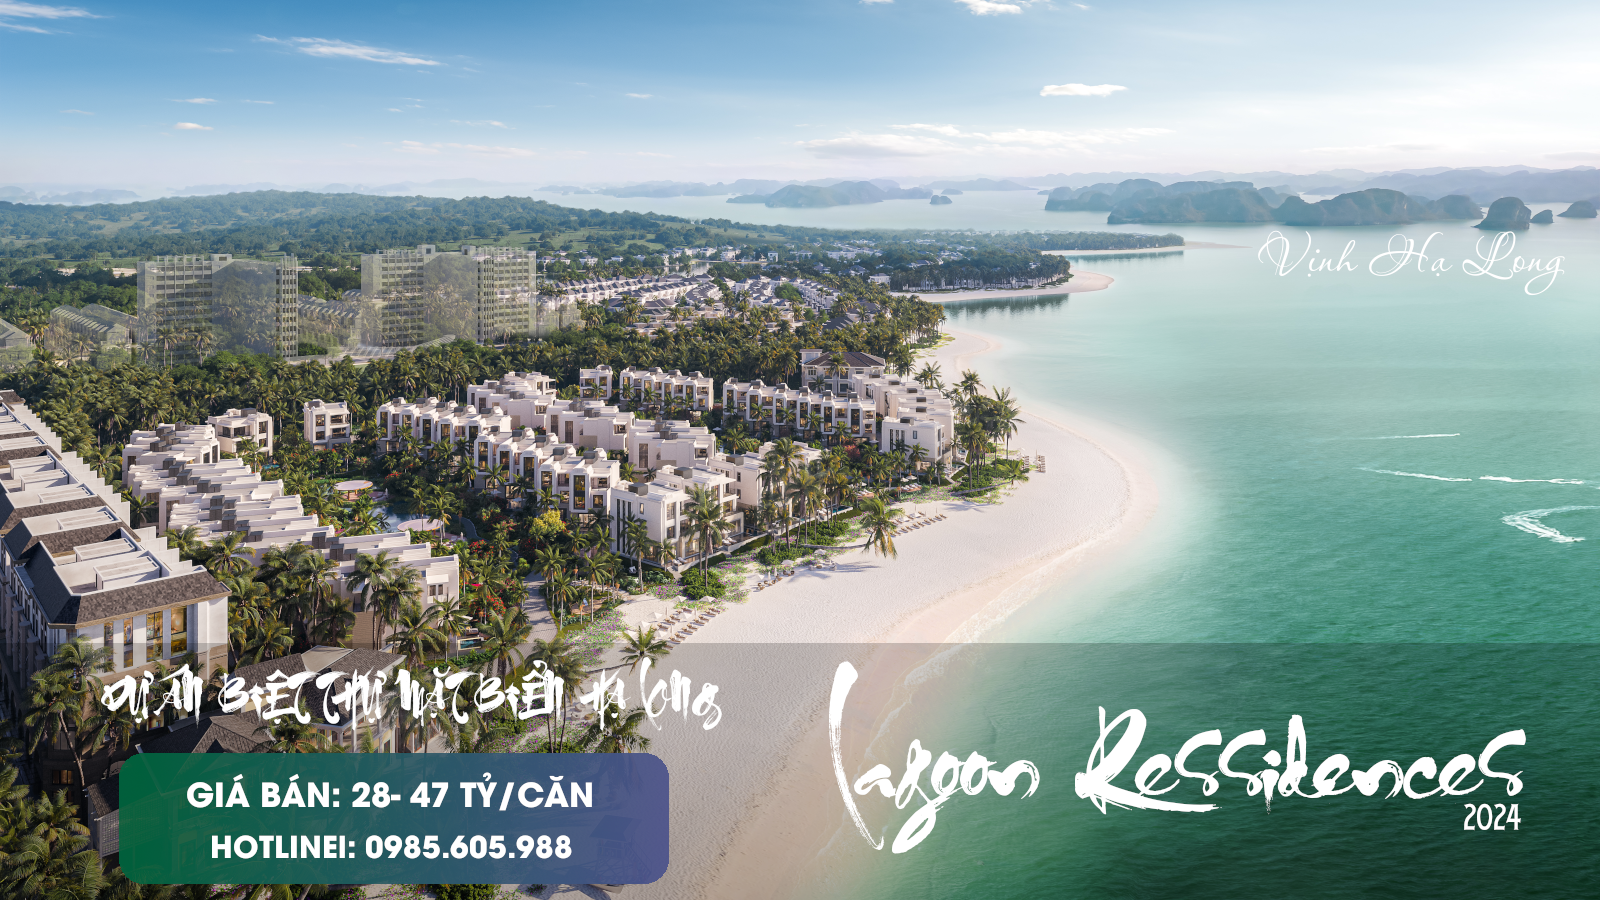 Biệt thự Lagoon Residences Hạ Long 2024 | Dự án Grand Bay Hạ Long